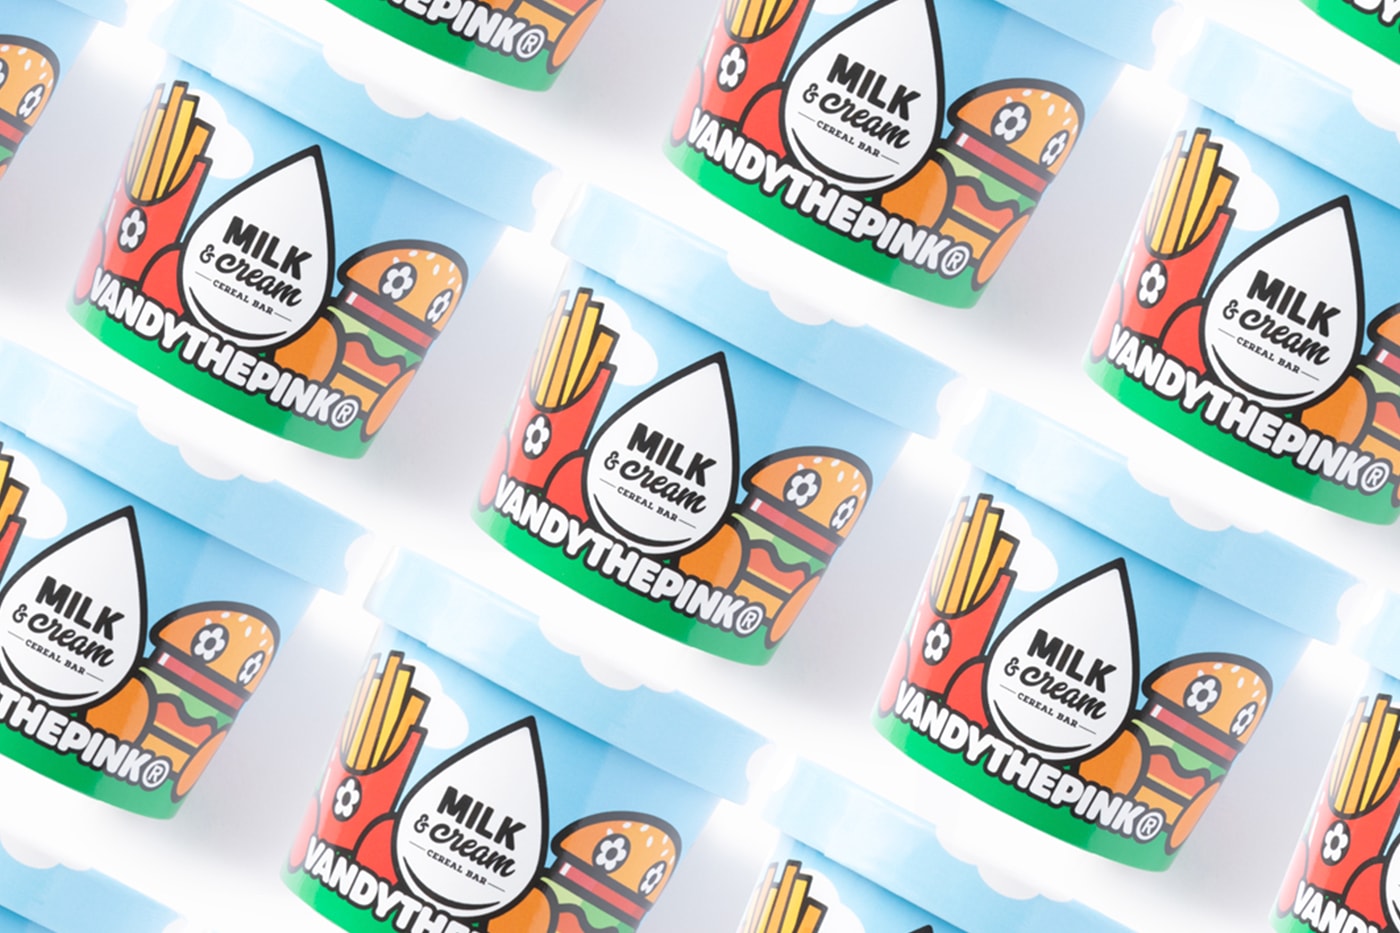 Milk & Cream Cereal Bar Vandy The Pink Pop-Up Tofu Burger Release Info Date Buy Price 